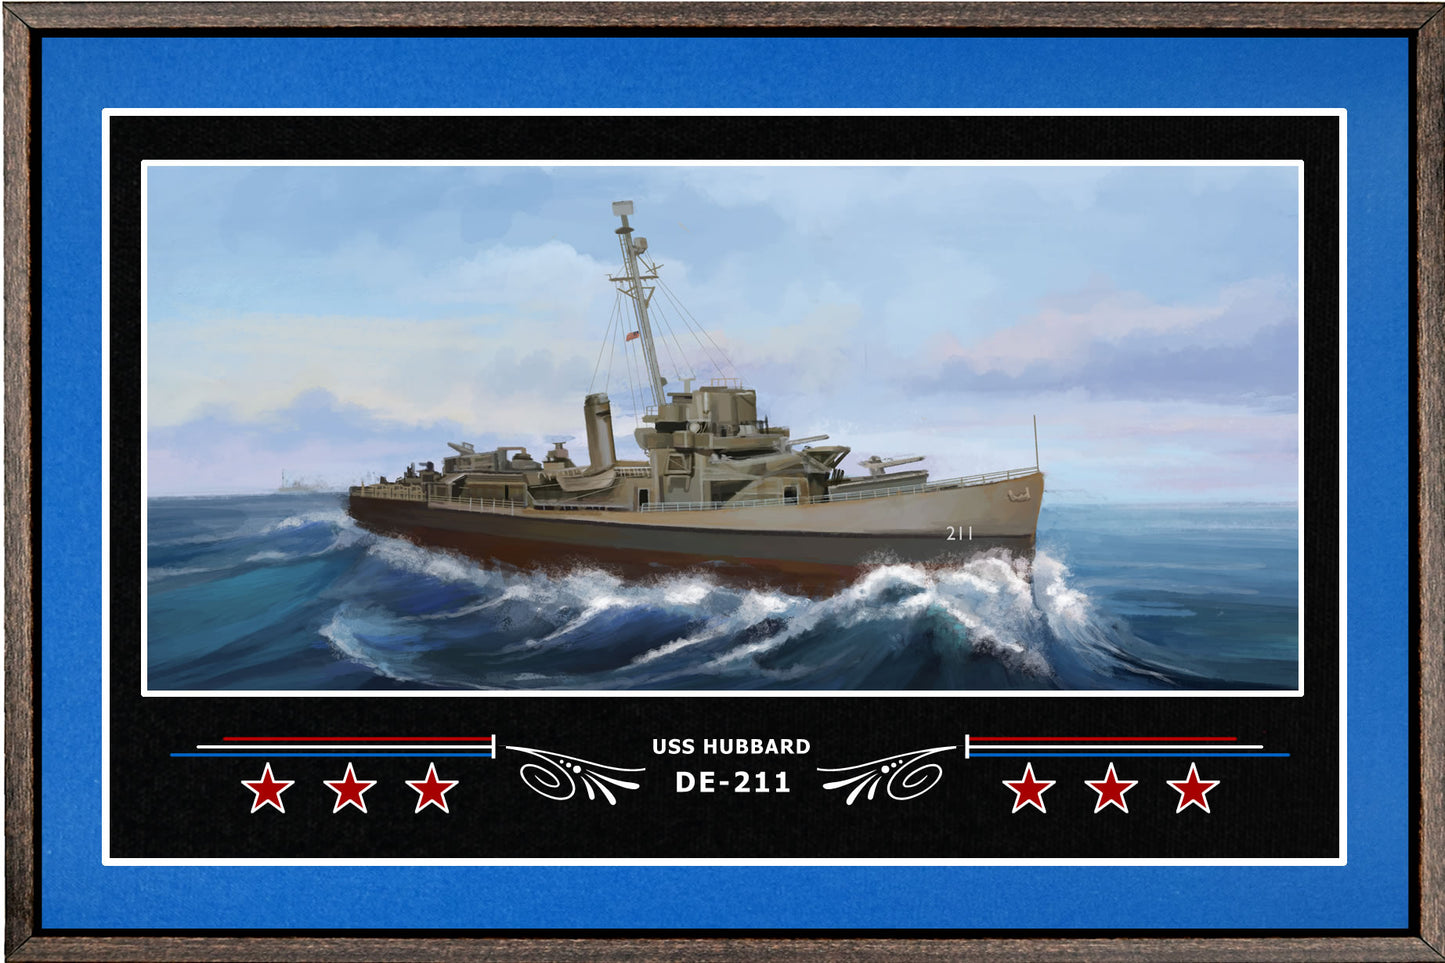 USS HUBBARD DE 211 BOX FRAMED CANVAS ART BLUE